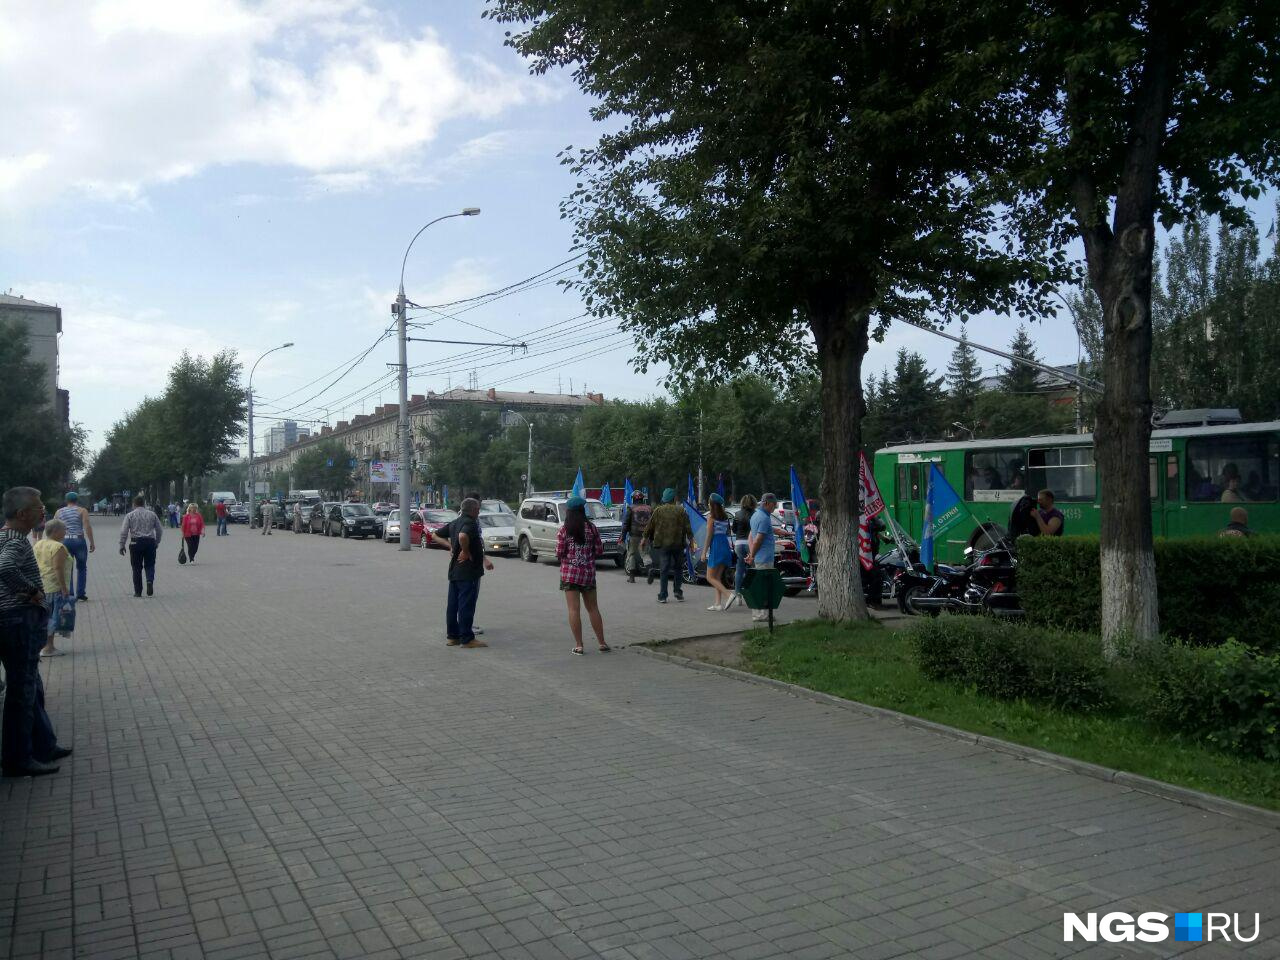 Сегодня с флагами ВДВ по Новосибирску ездят даже байкеры. Фото Кирилла Шматкова